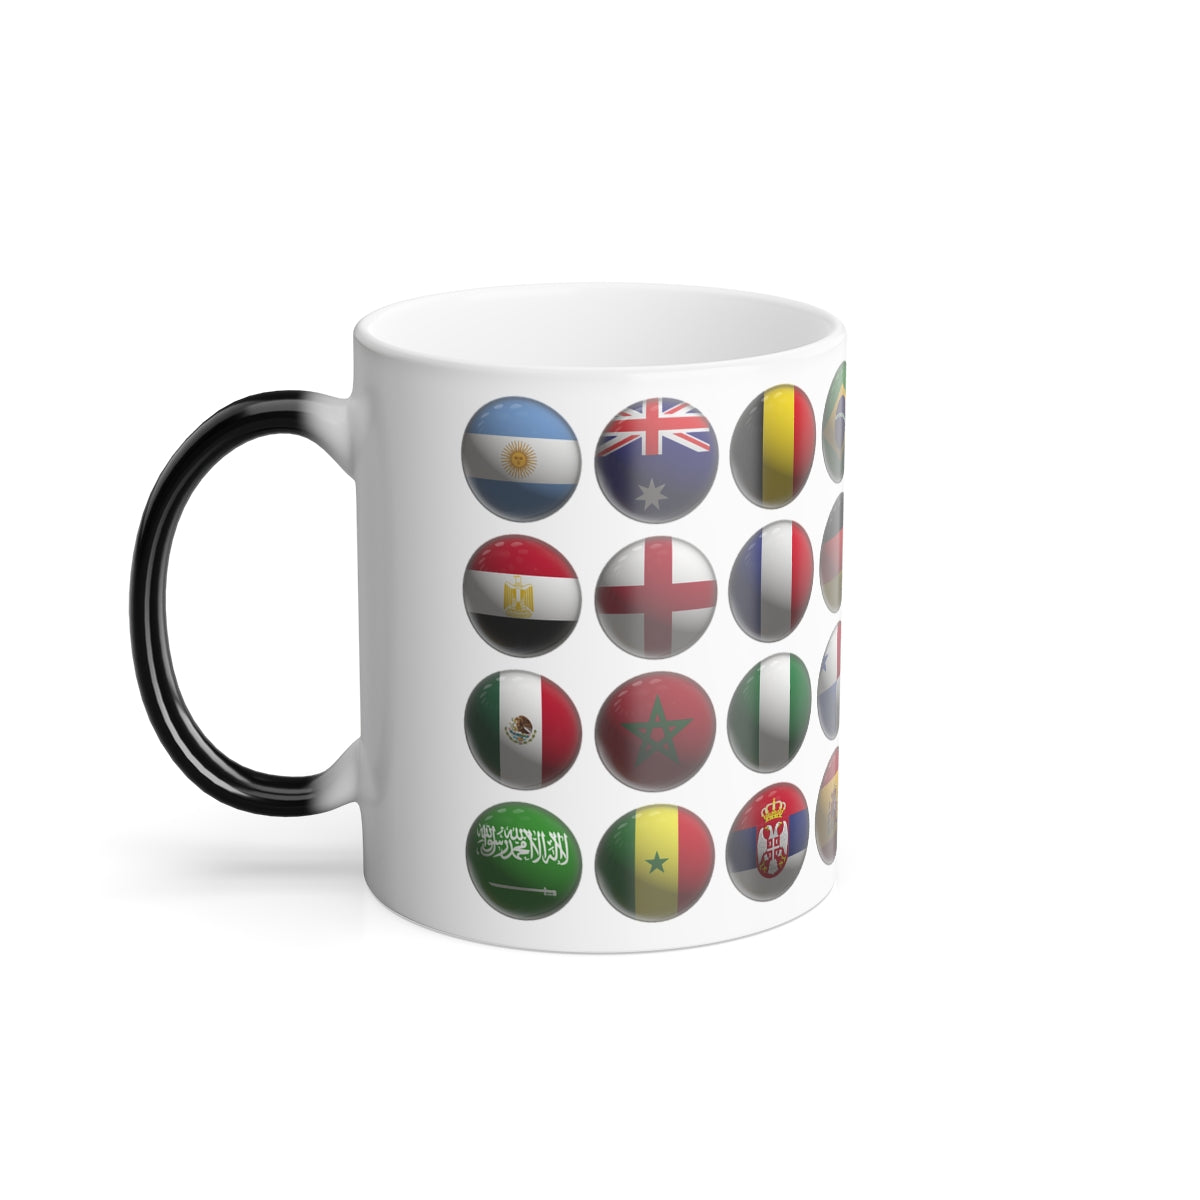 FOOTBALL WORLD CUP QATAR MUG, Color Morphing Mug, 11oz